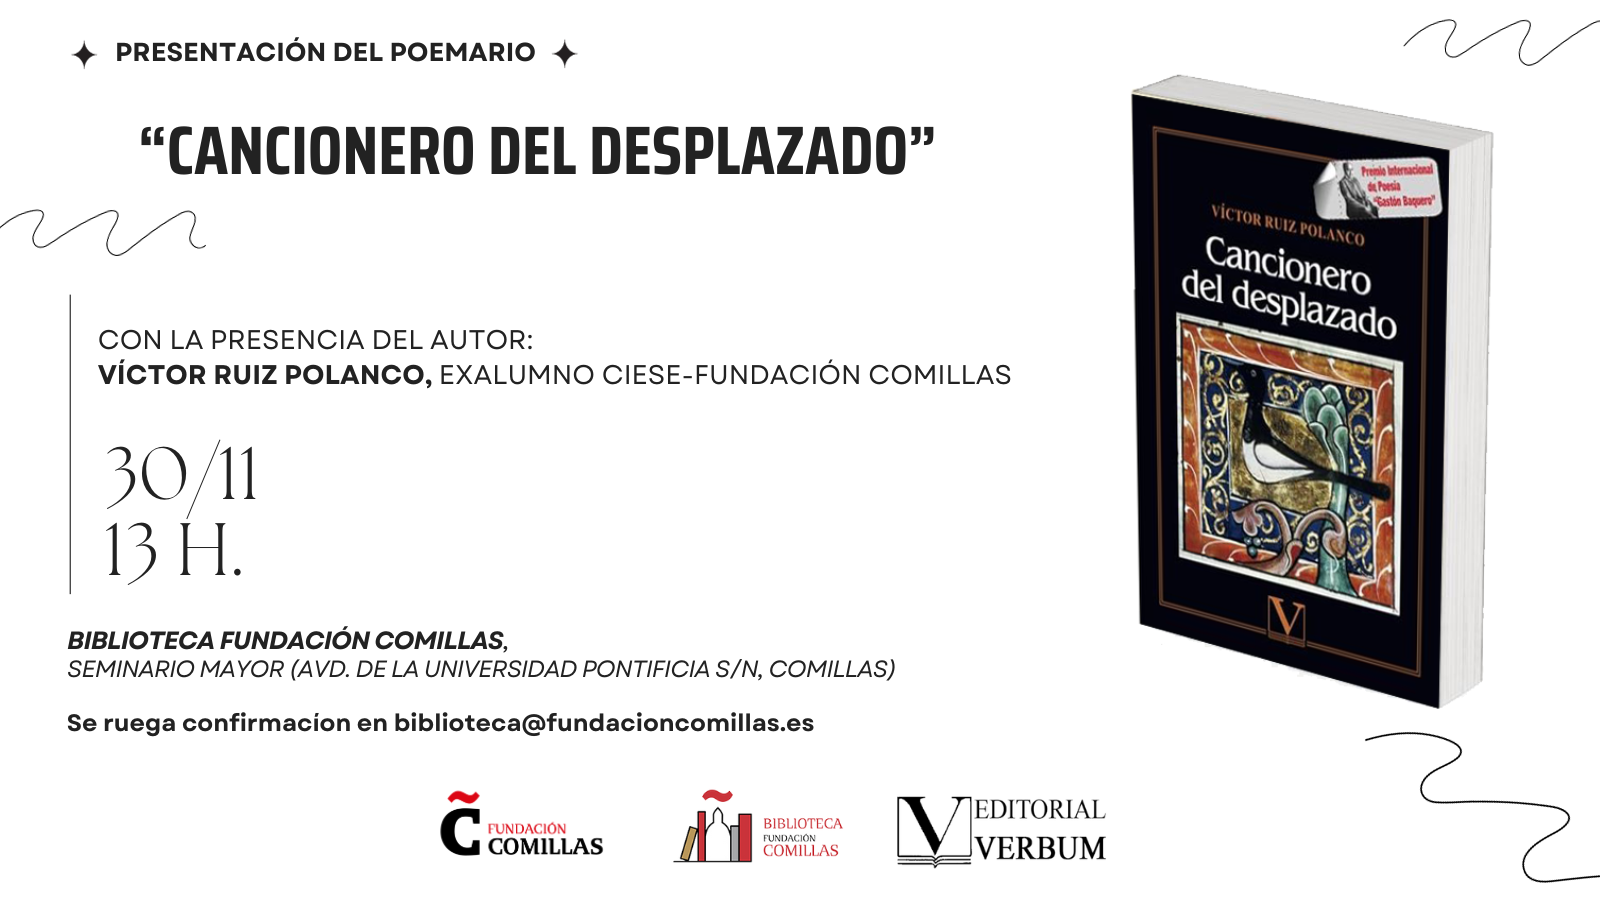 Victor Ruiz Polanco poemario CIESE-Fundación Comillas